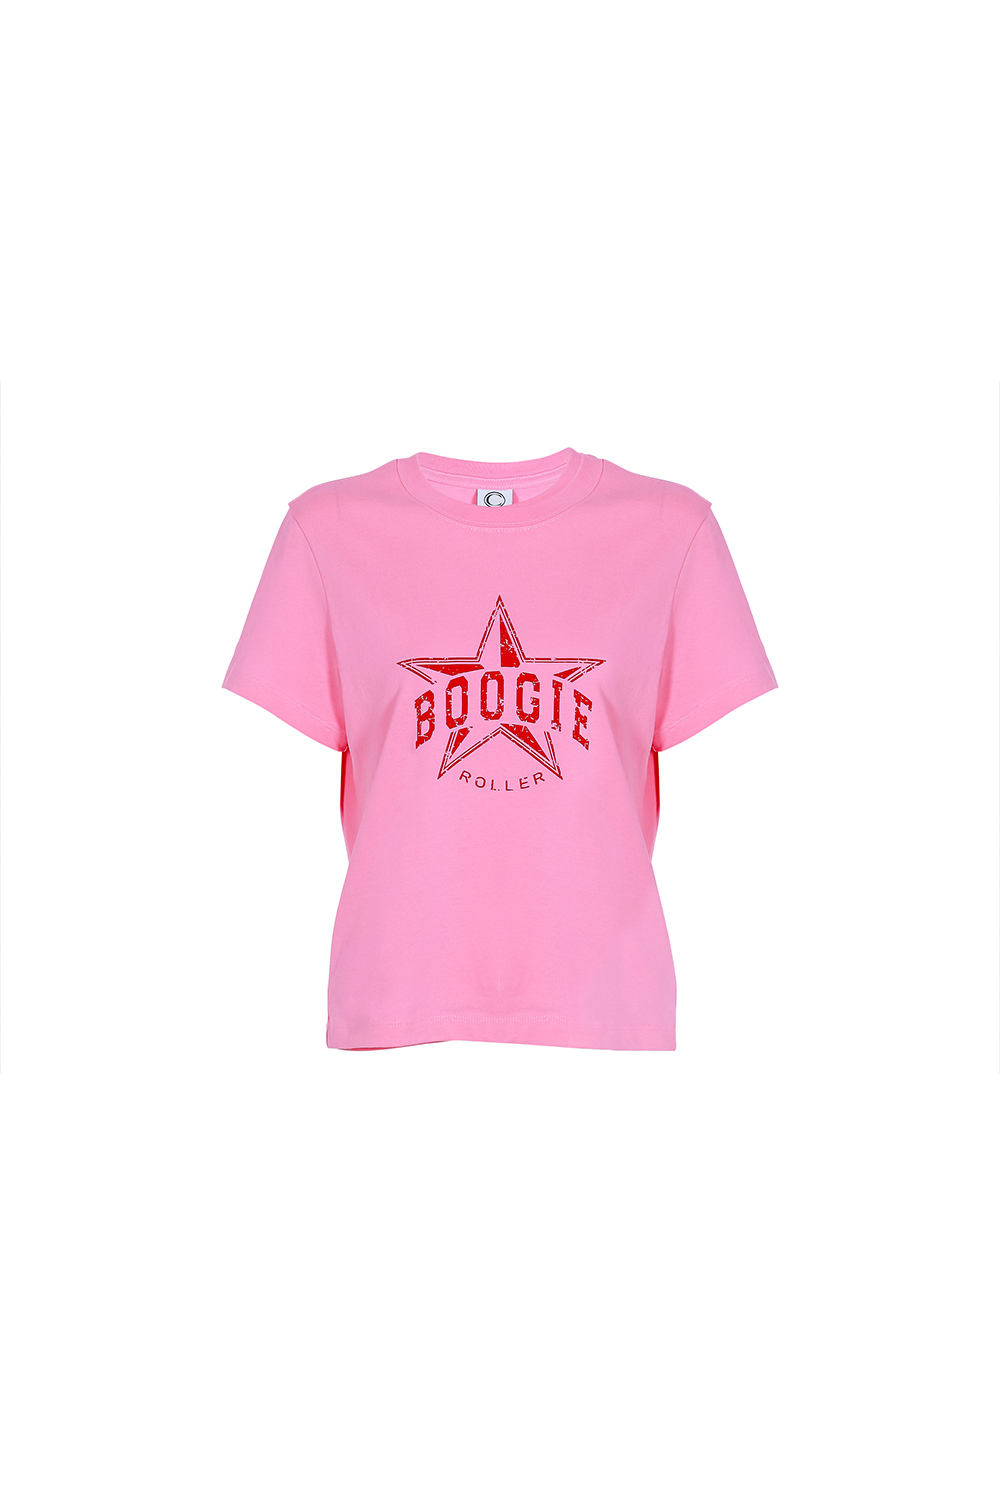 Boogie T-shirt_pink